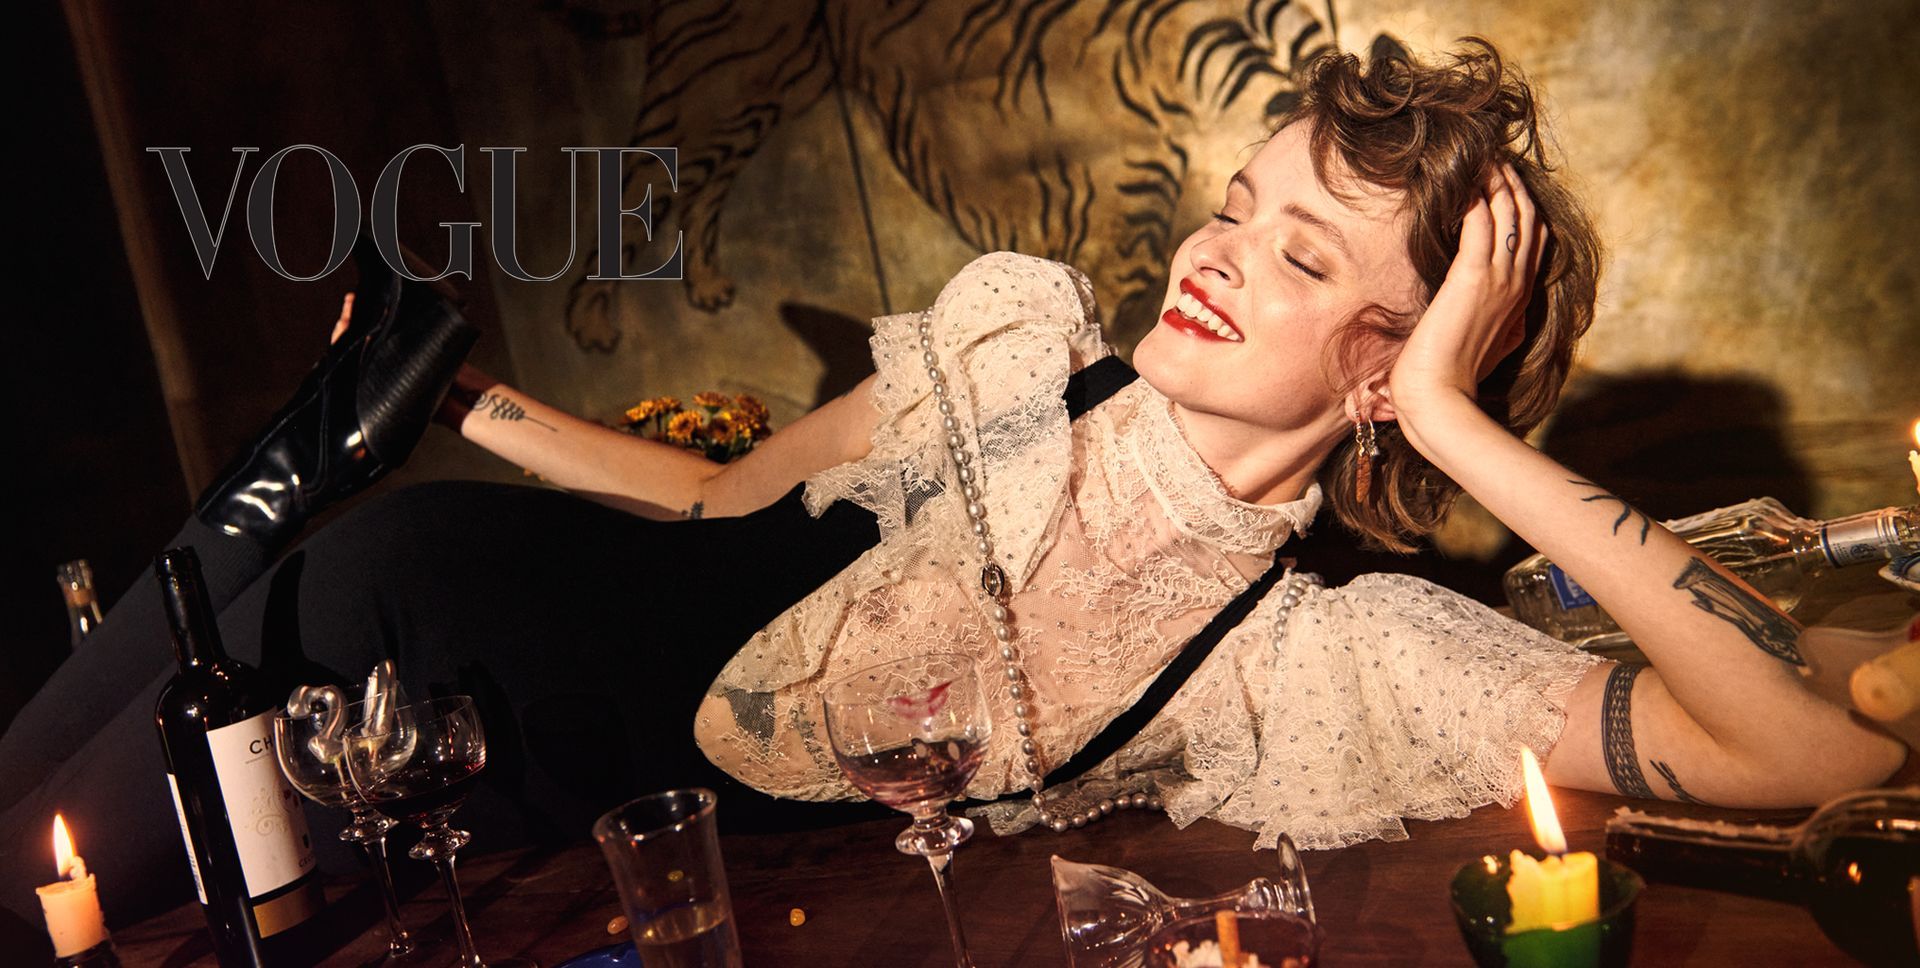 Veröffentlichung Vogue Portugal, Model seitlich auf Tisch liegend mit grauer langer Perlenkette